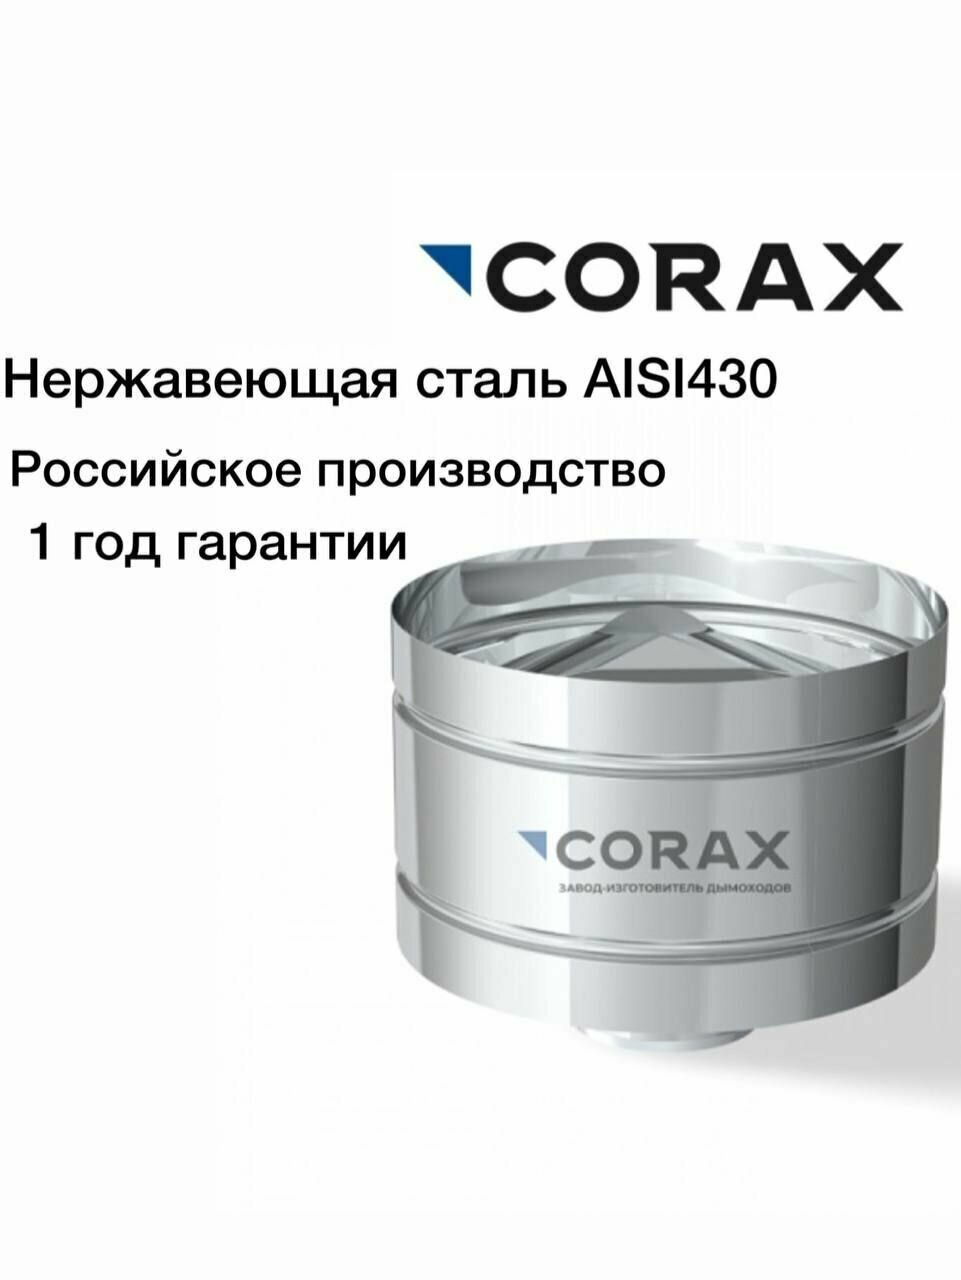 Зонт-Д с ветрозащитой нержавеющий (430/05) CORAX